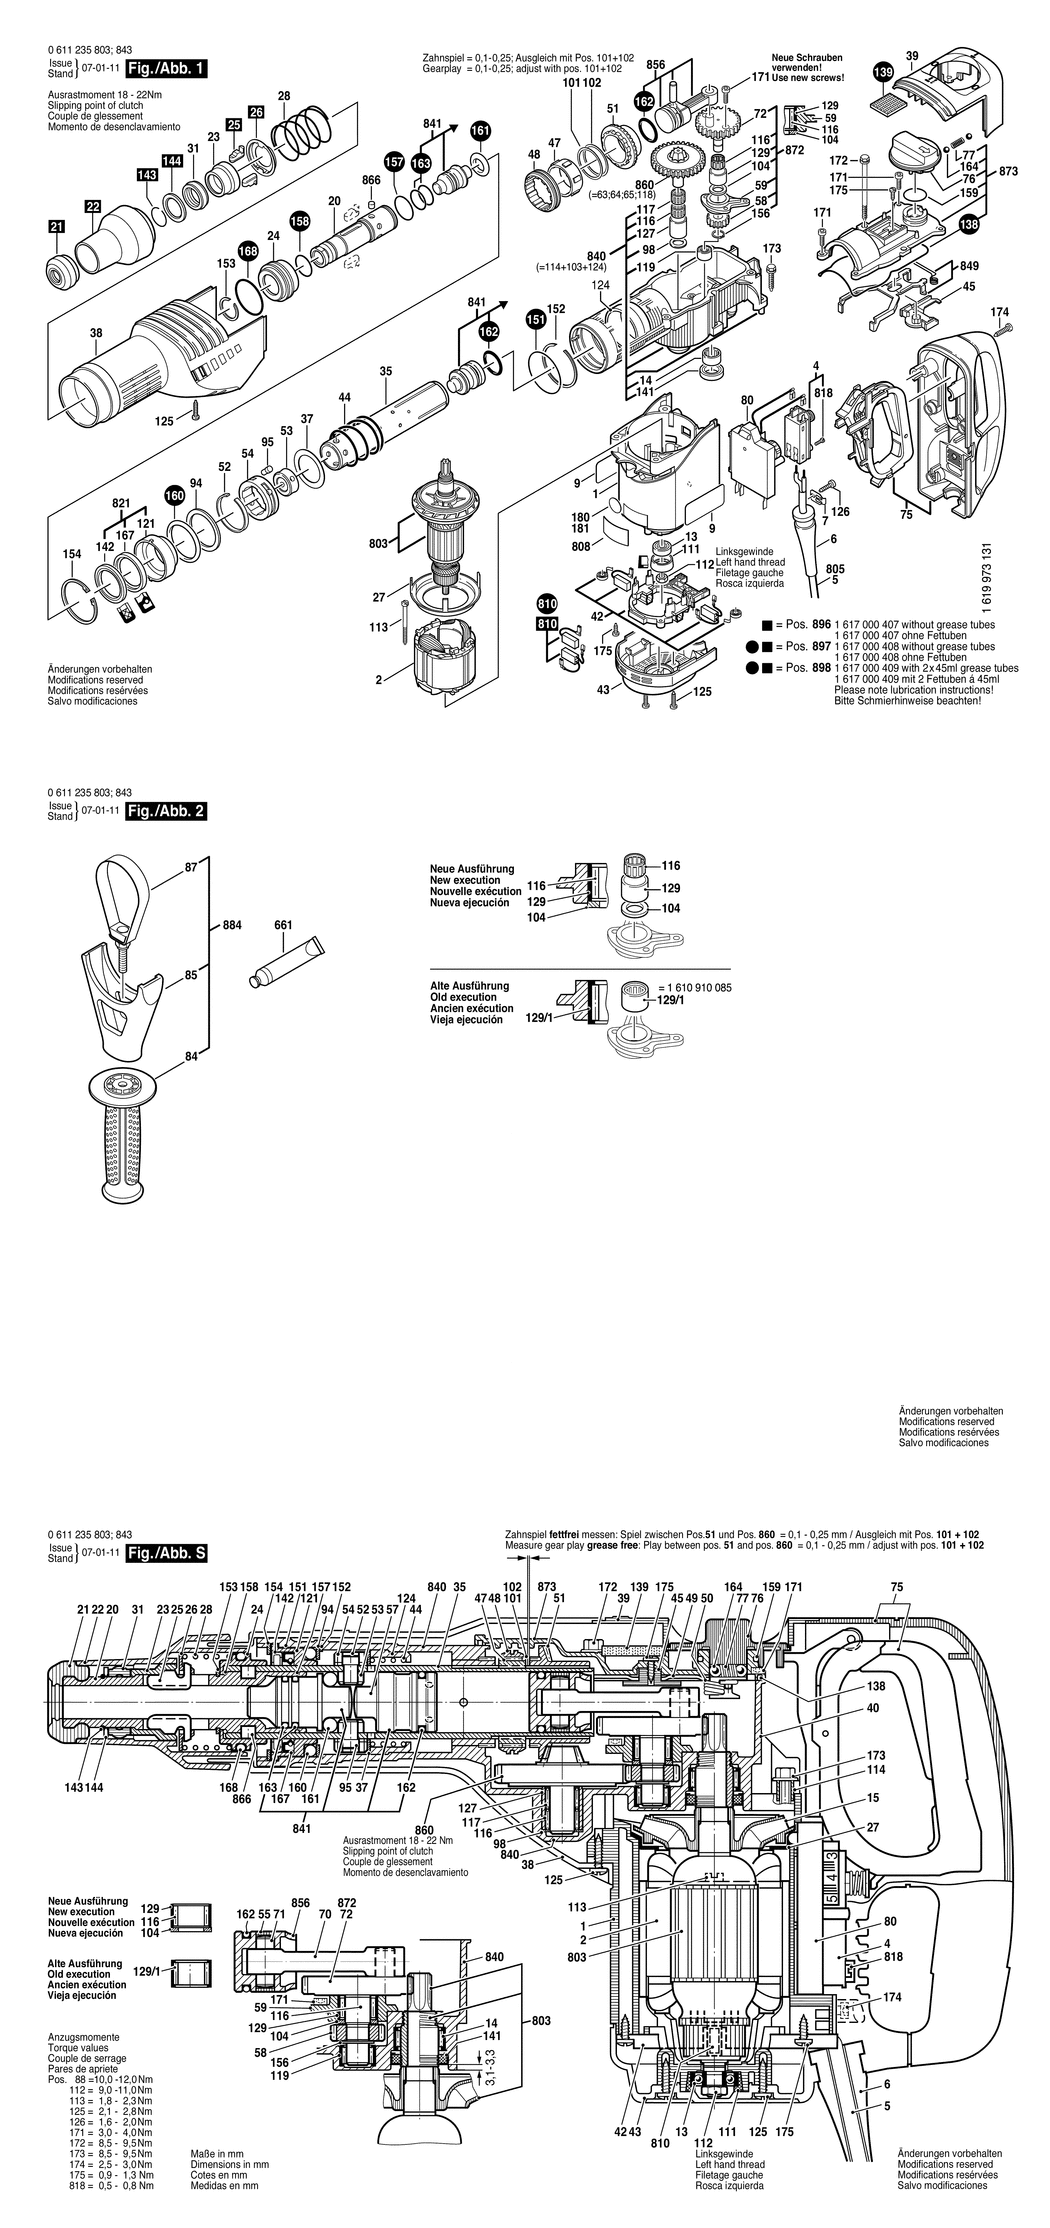 Bosch GBH 7-45 DE / 0611235850 / I 230 Volt Spare Parts